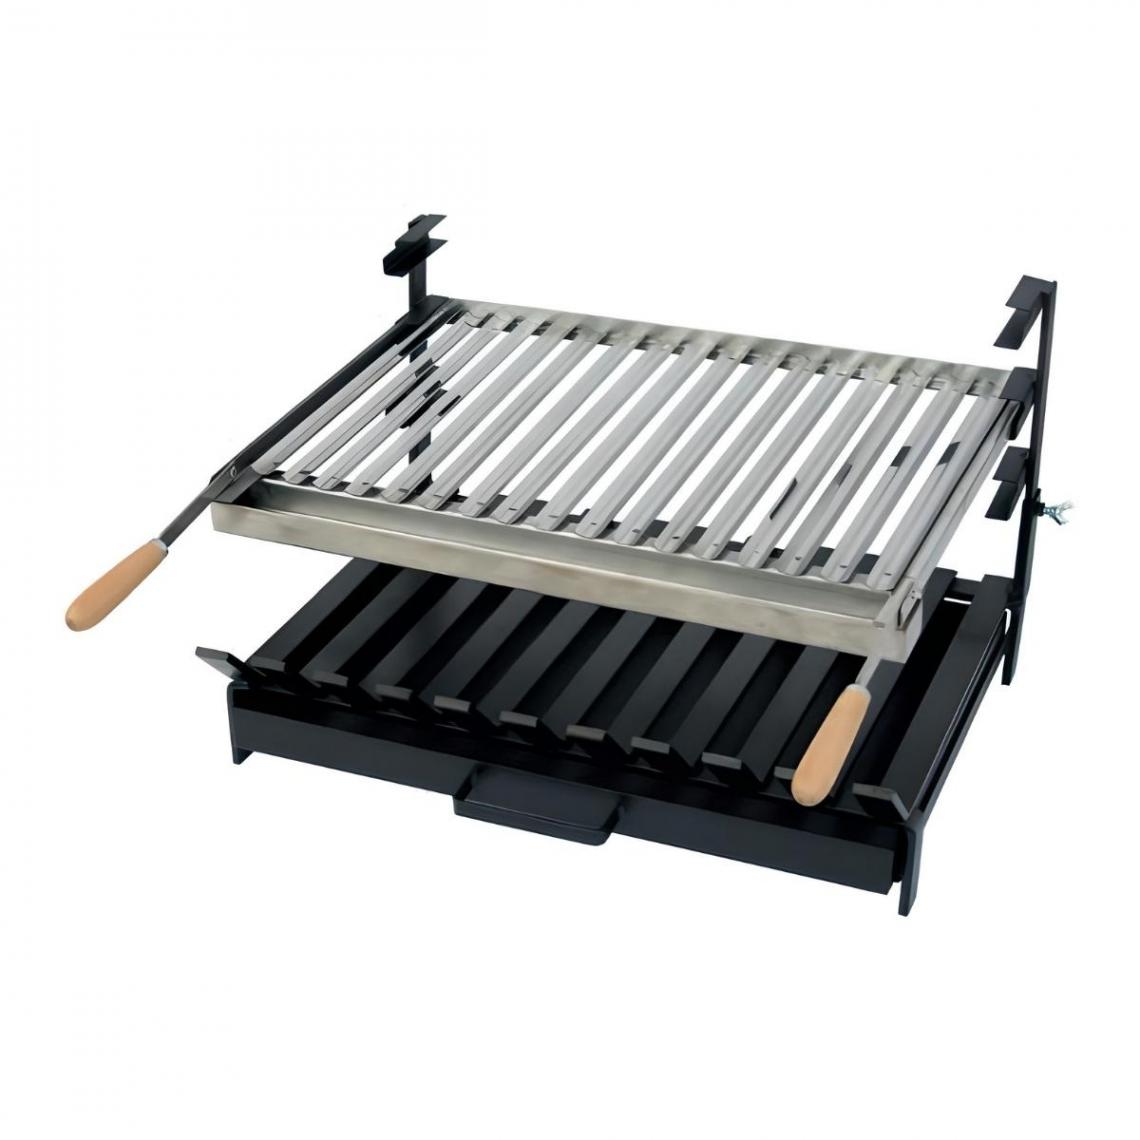 Visiodirect - Grille à rôtir avec tiroir et récupérateur de graisse en Inox coloris Noir - 60 x 48 x 40 cm - Accessoires barbecue